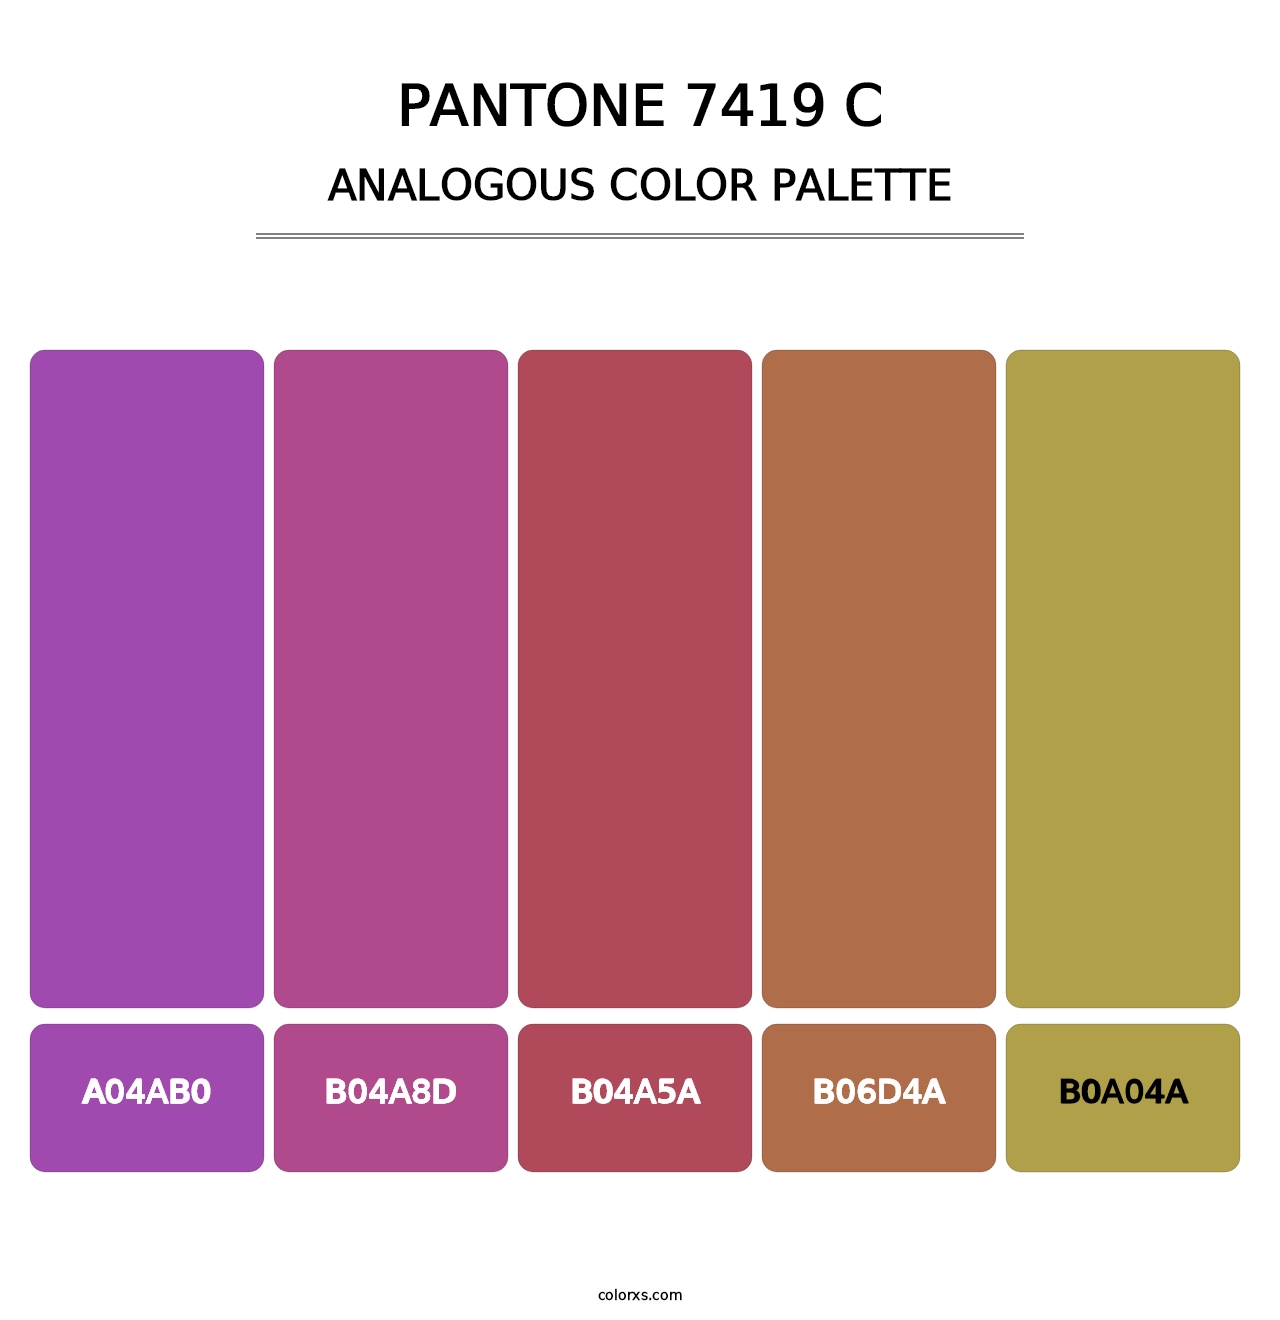 PANTONE 7419 C - Analogous Color Palette